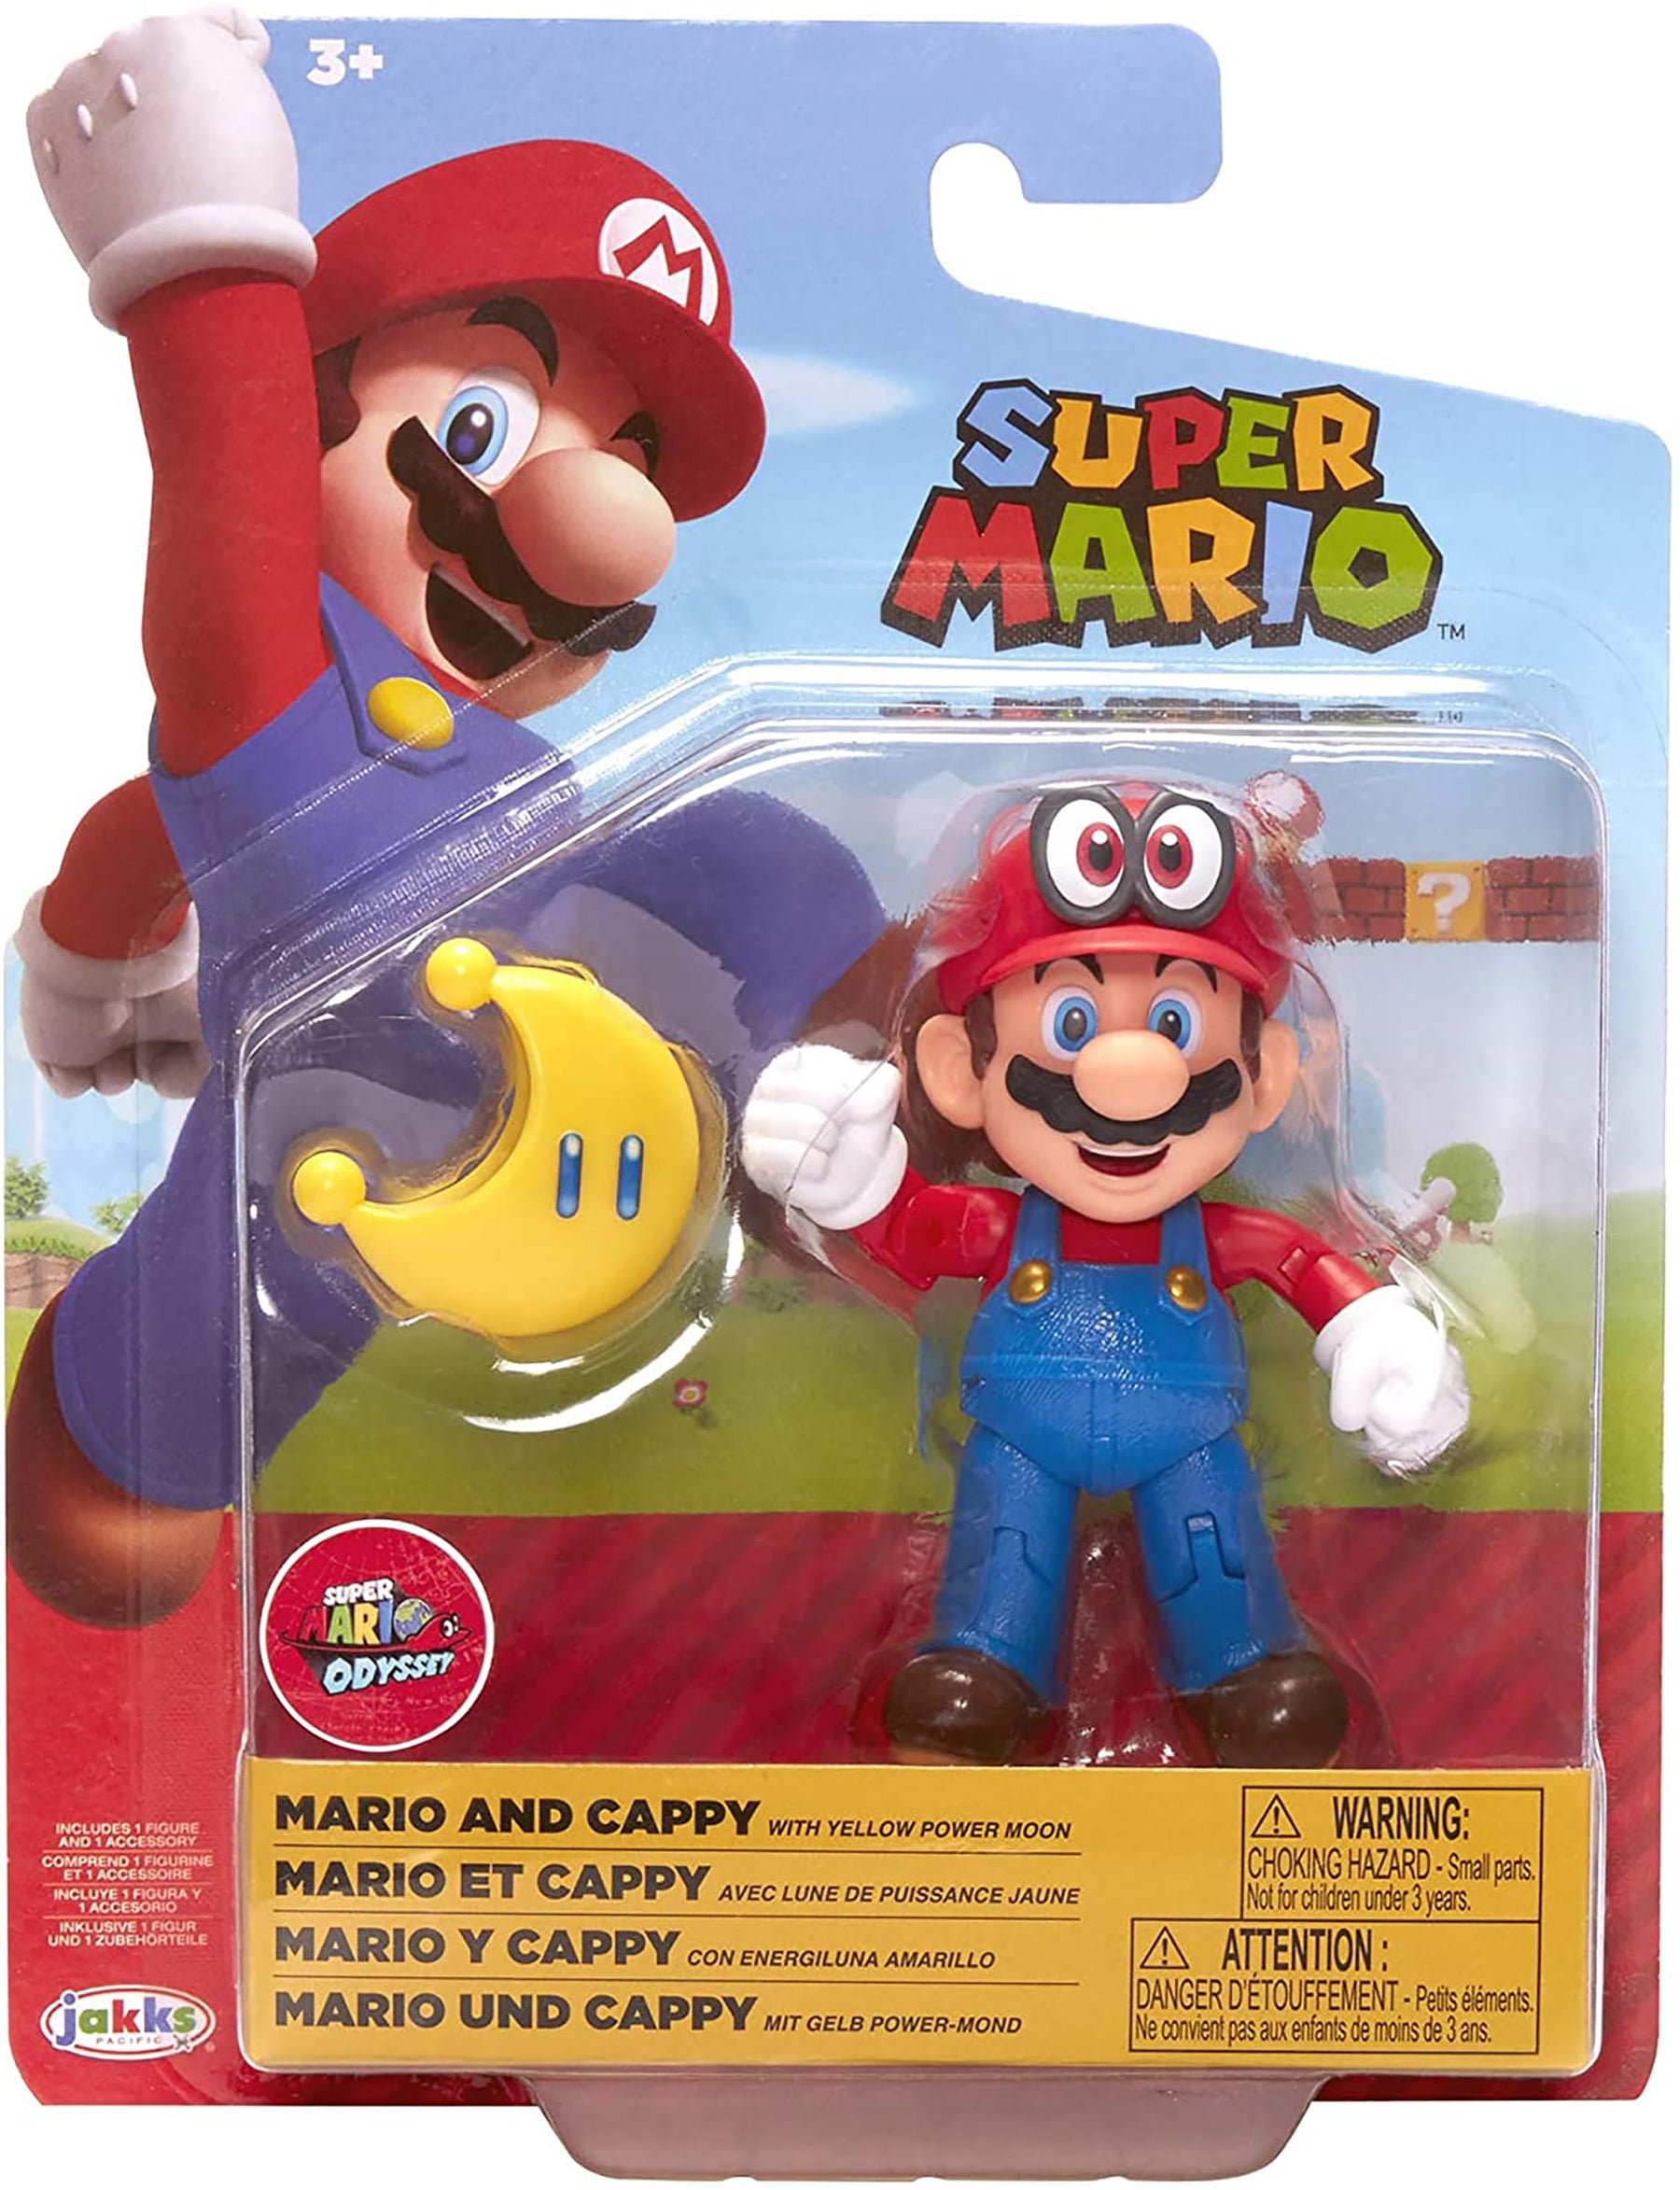 Super Mario World of Nintendo 4 Inch Figure | Mario & Cappy